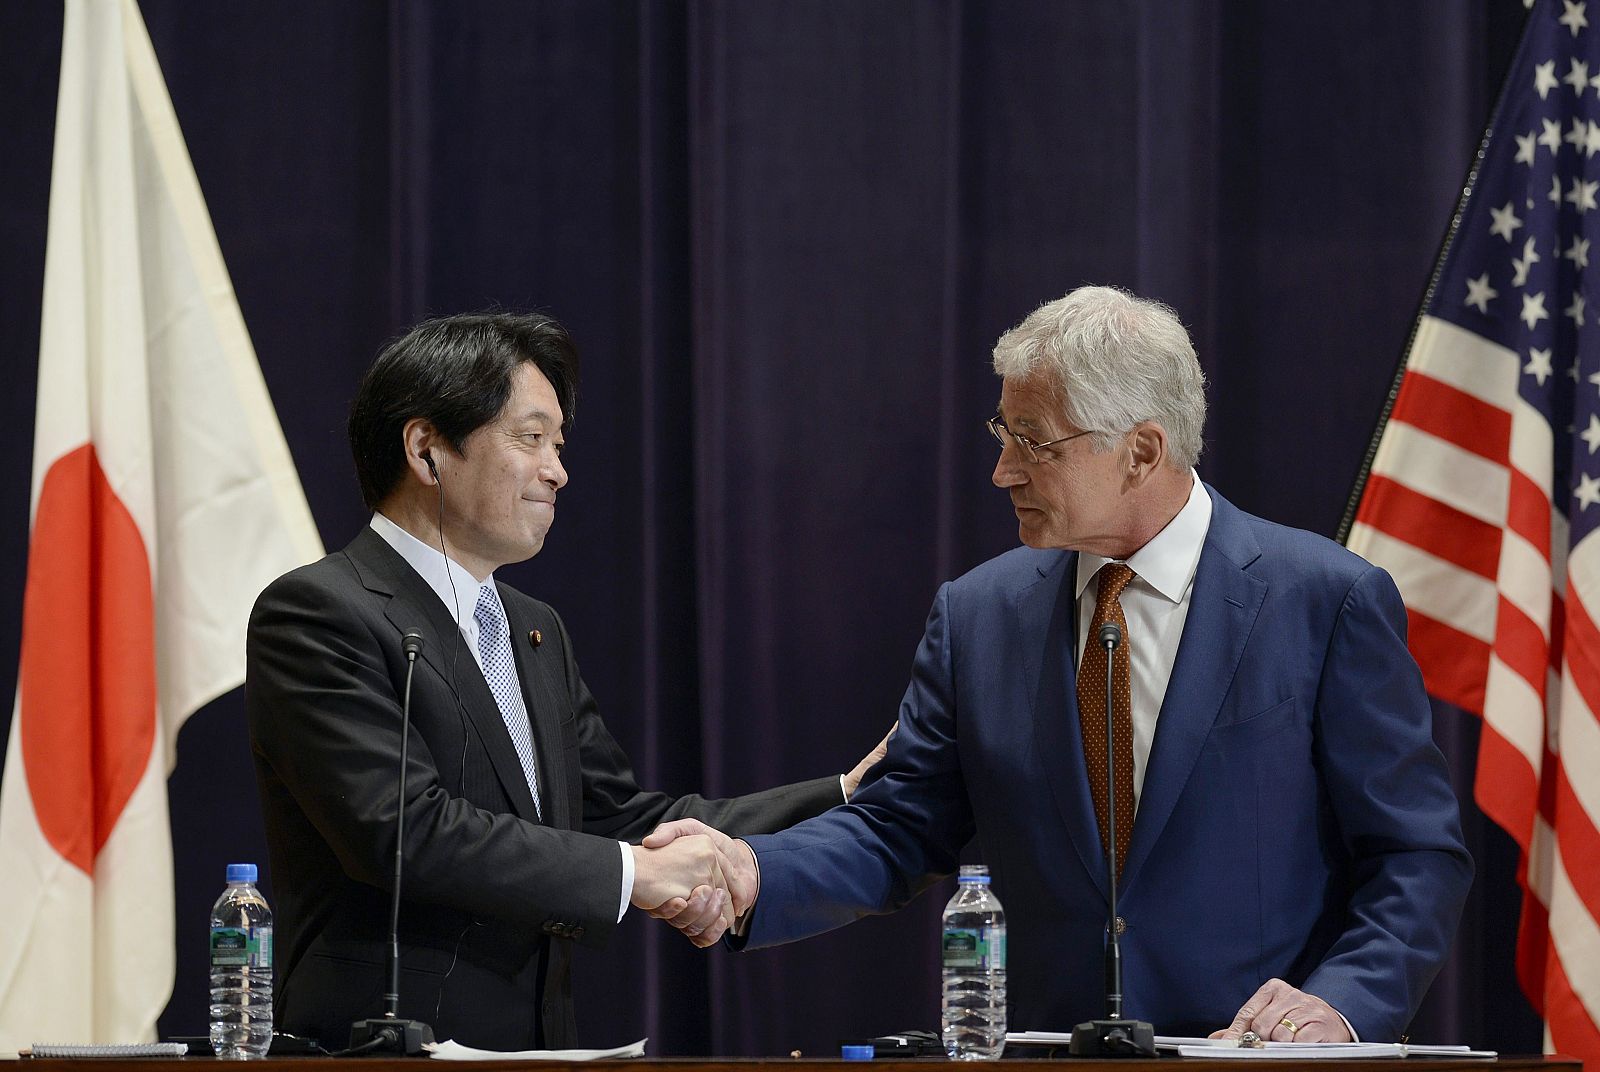 El secretario de defensa de EE.UU. Chuck Hagel (derecha) y su homólogo japonés Itsunori Onodera (izquierda) estrechan sus manos durante la comparecencia ante la prensa en el ministerio de Defensa de Tokio